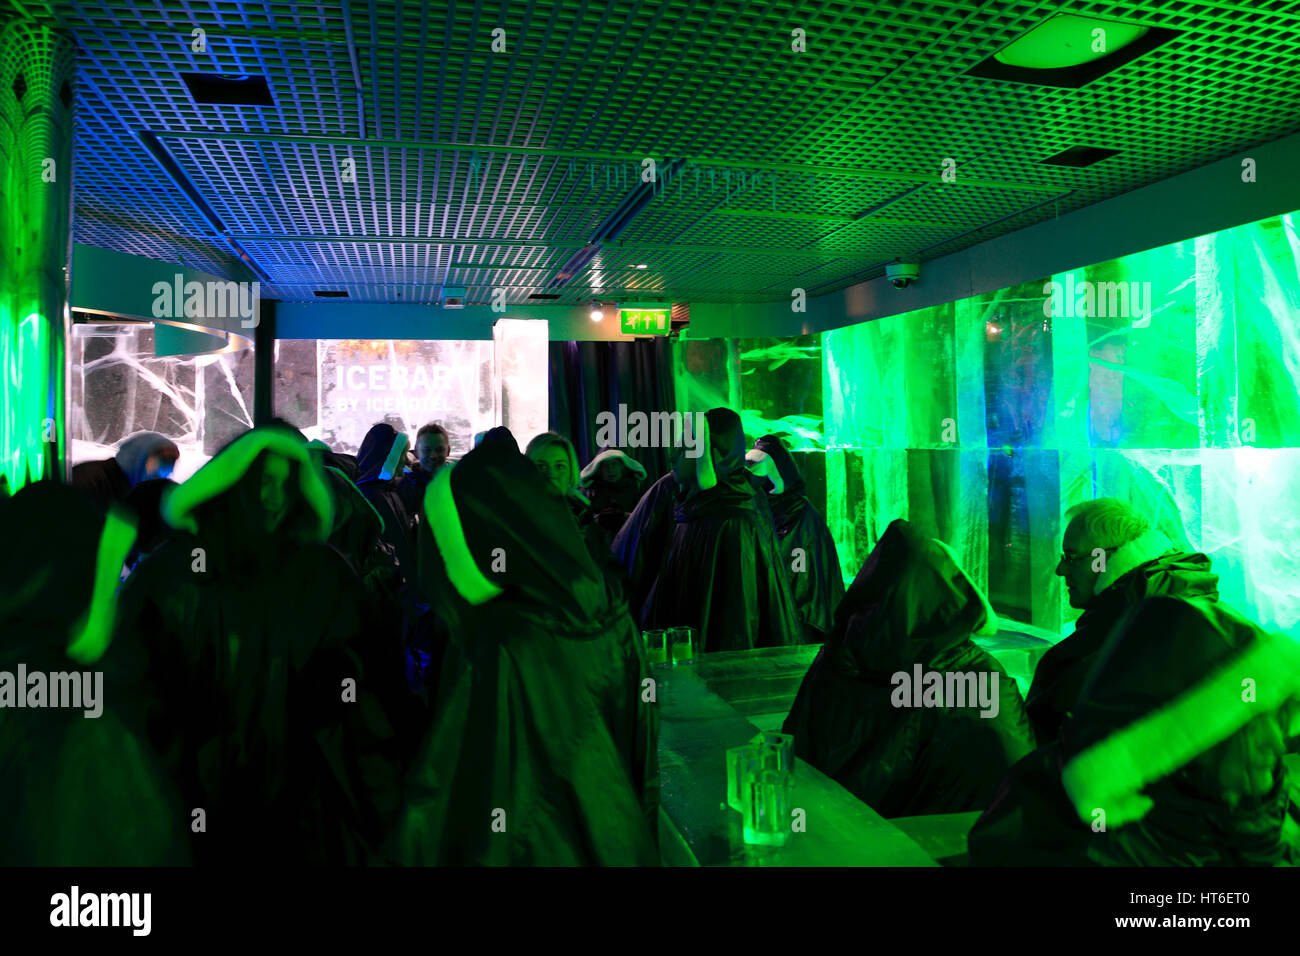 The ice bar london immagini e fotografie stock ad alta risoluzione - Alamy